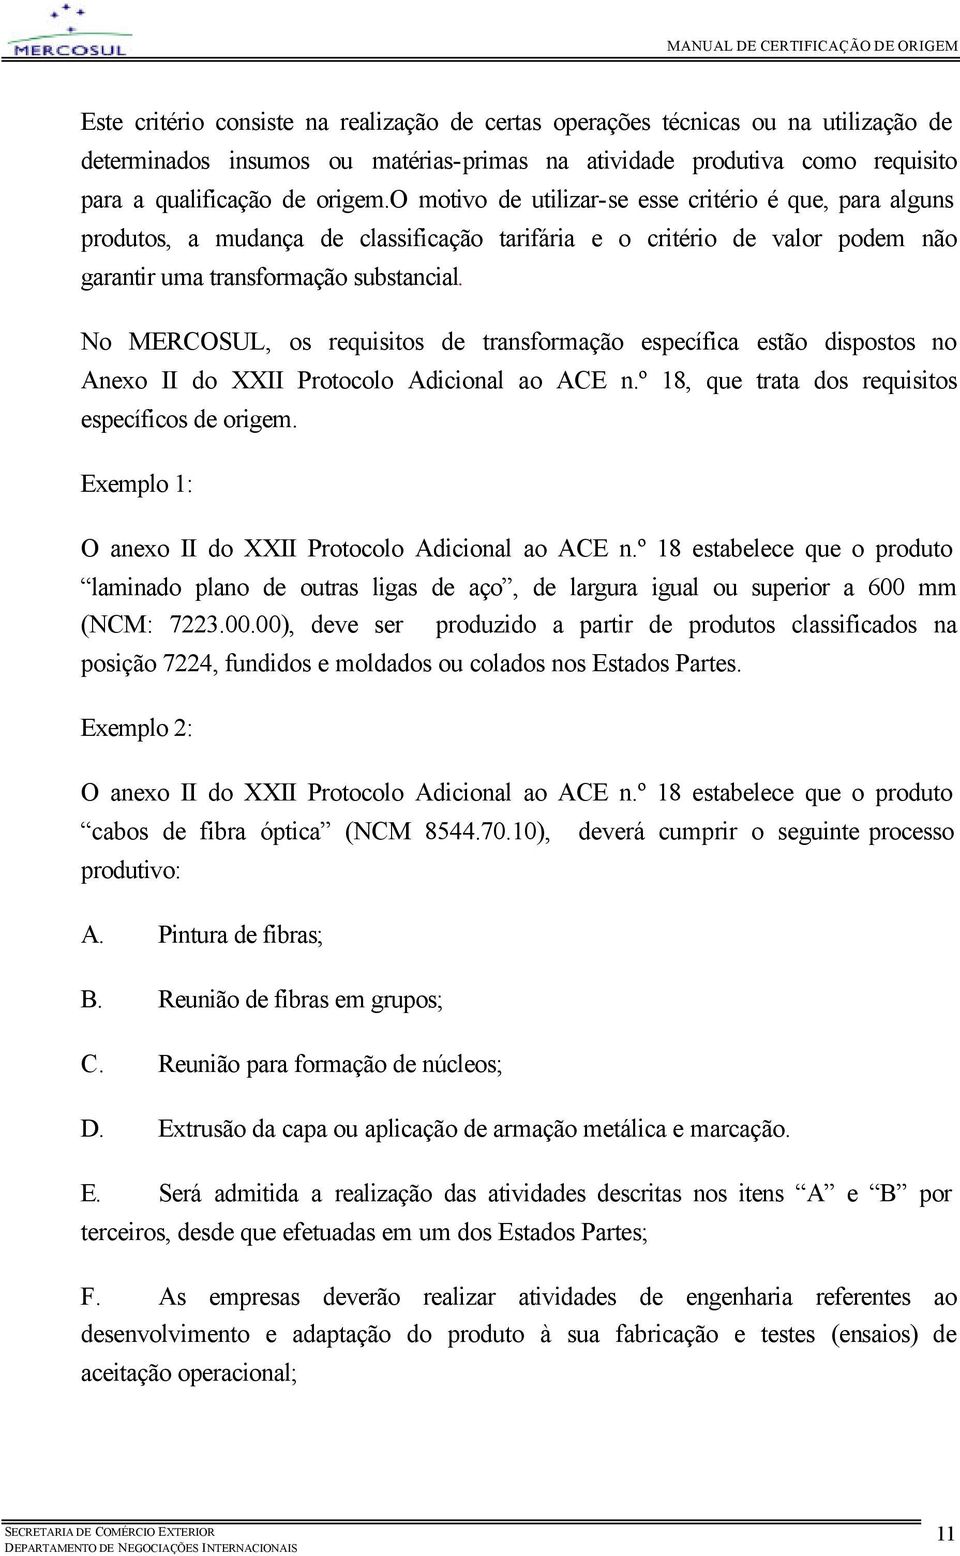 No MERCOSUL, os requisitos de transformação específica estão dispostos no Anexo II do XXII Protocolo Adicional ao ACE n.º 18, que trata dos requisitos específicos de origem.